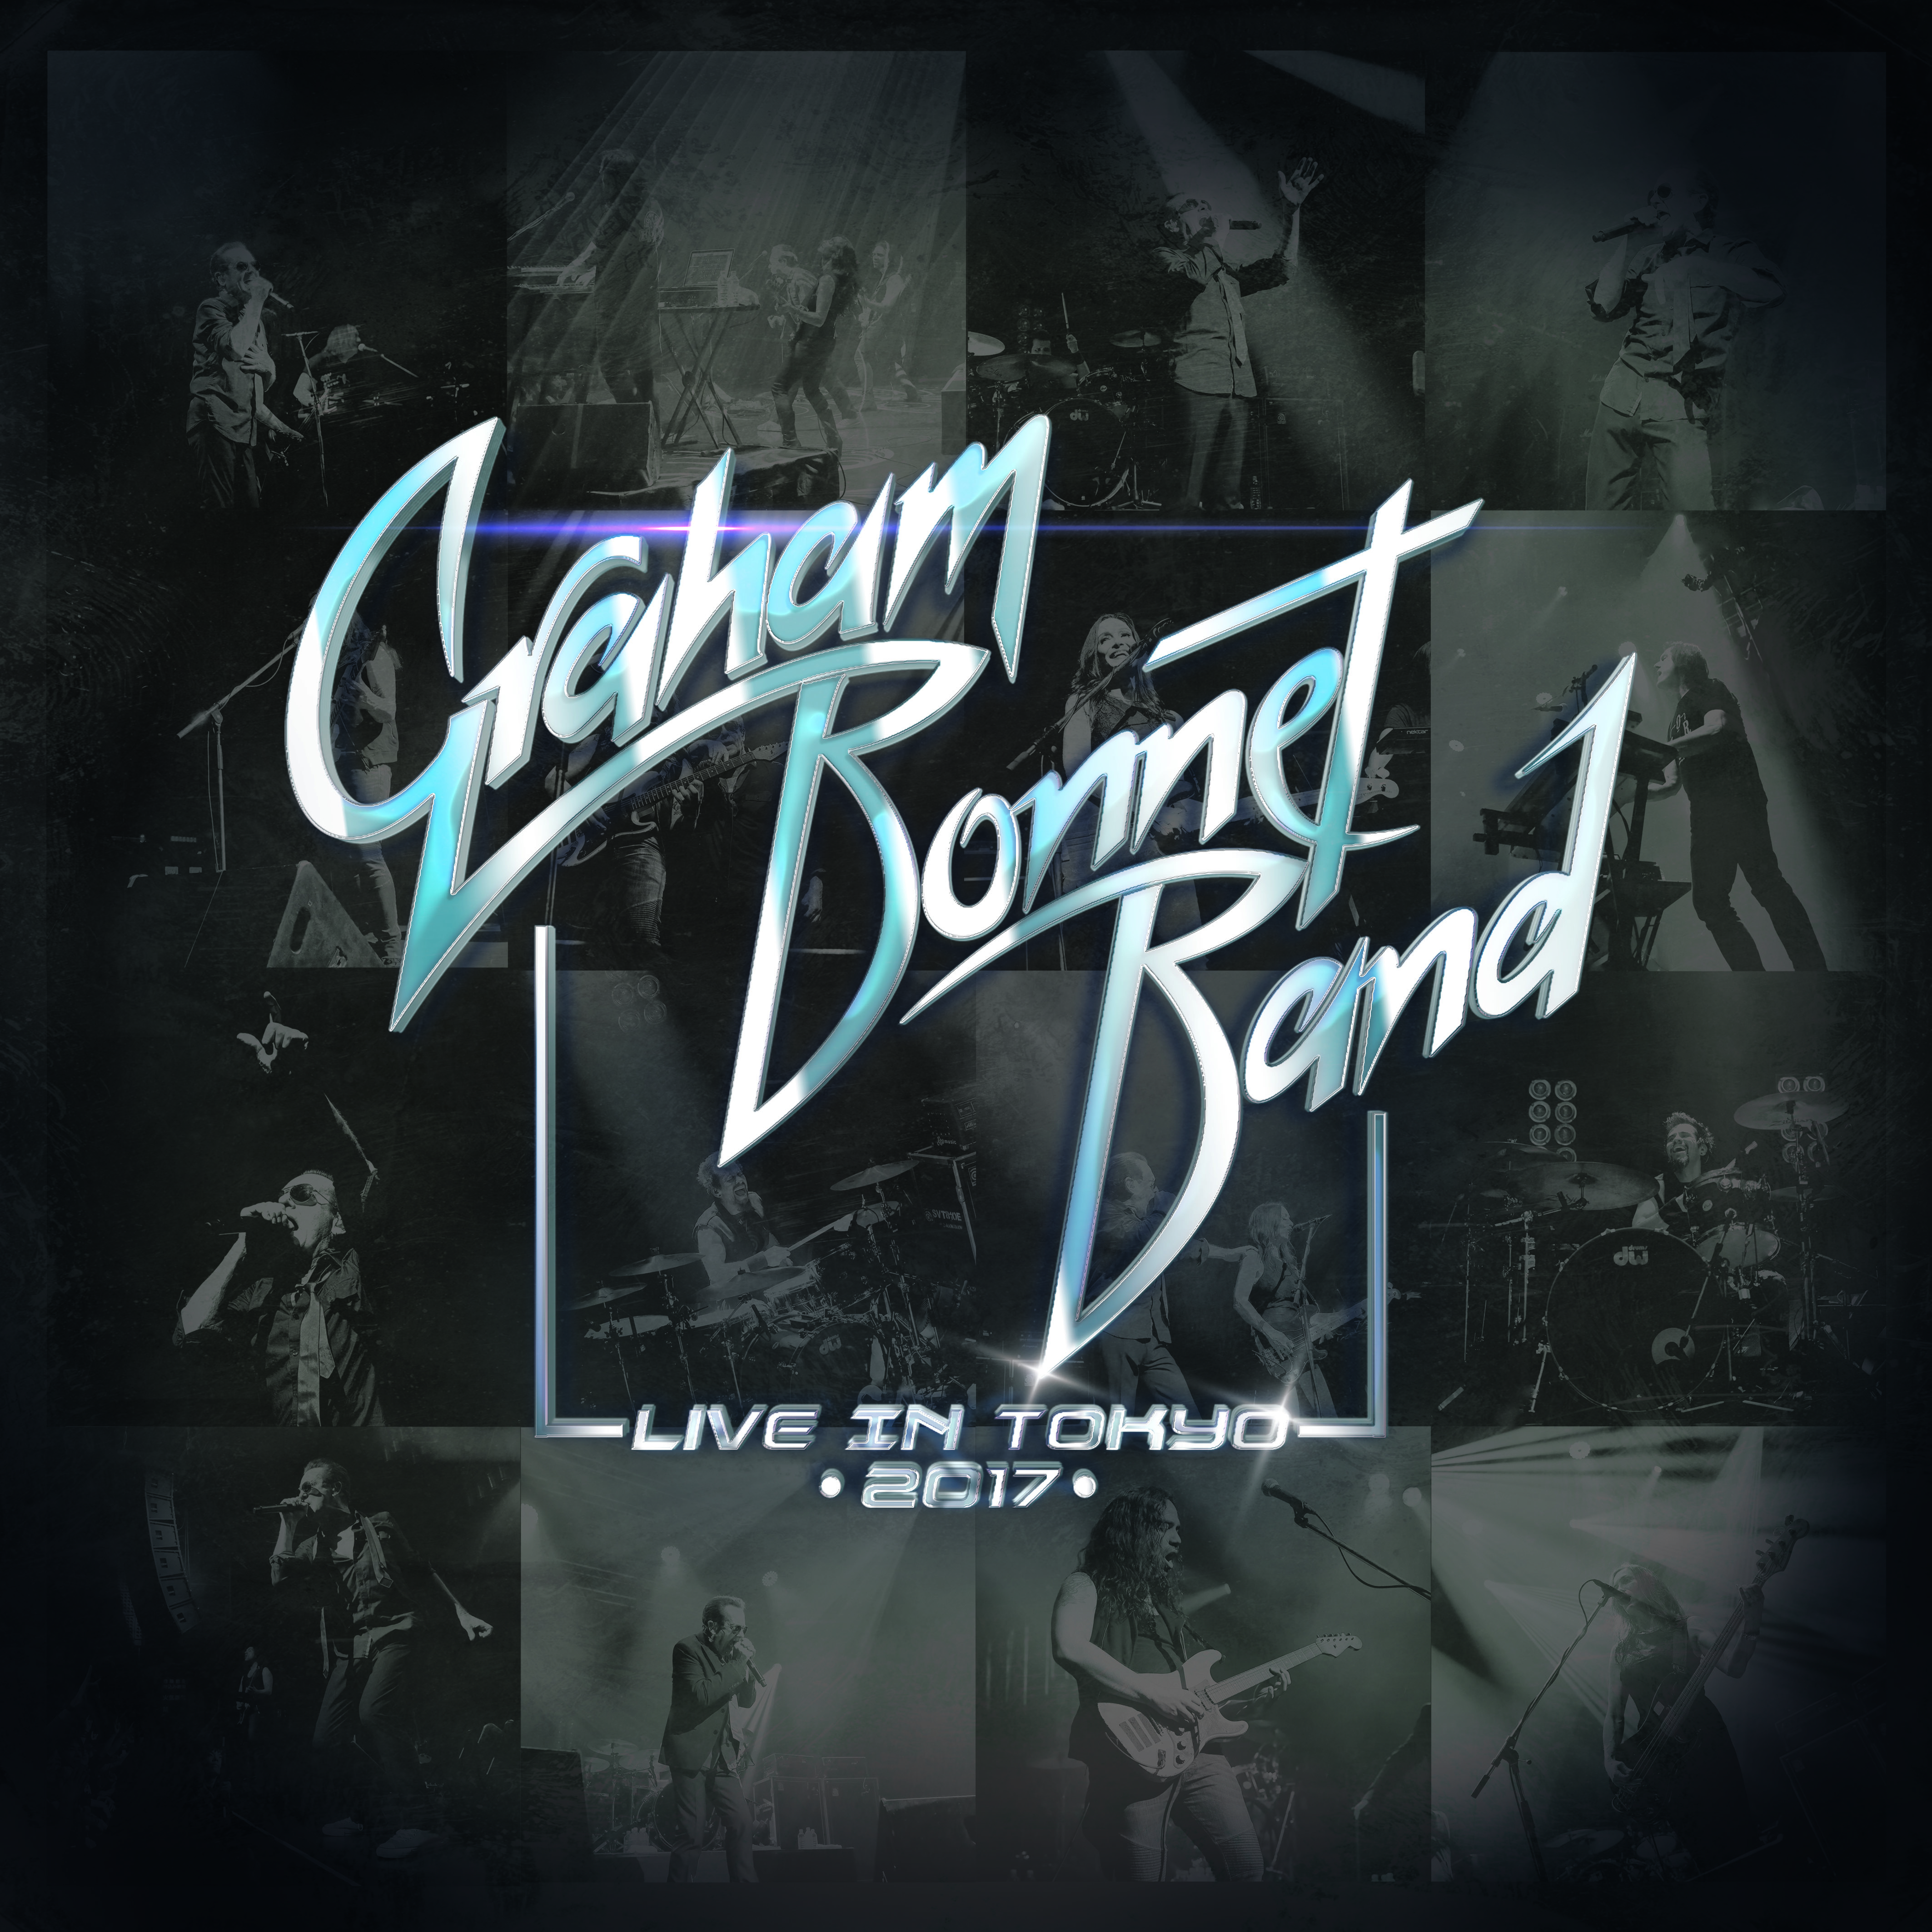 GRAHAM BONNET BAND – Live in Tokyo 2017